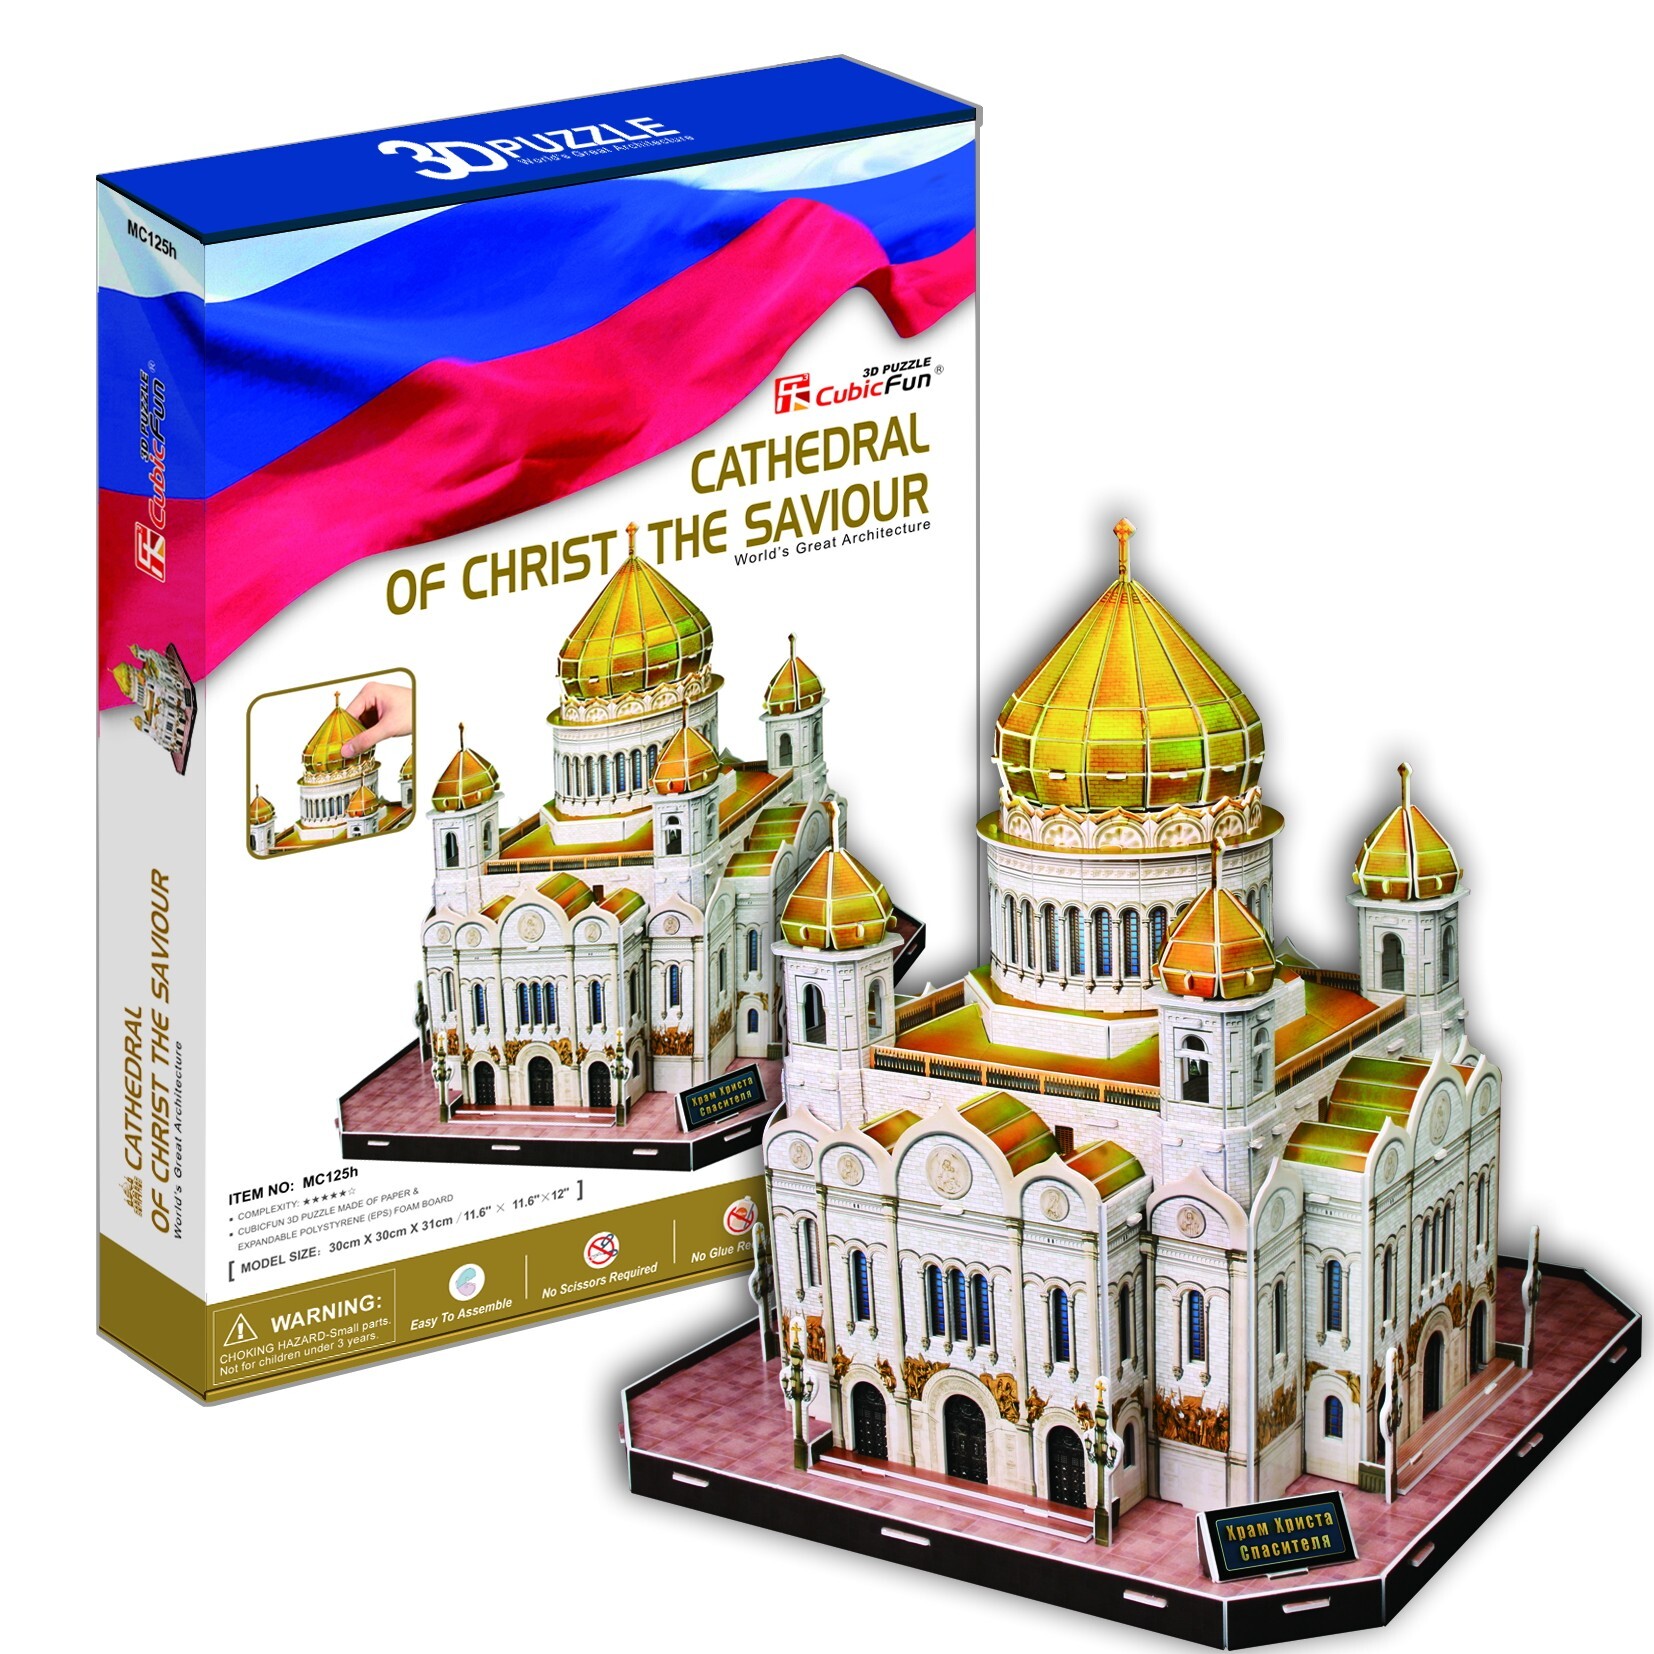 Bộ xếp hình 3D Nhà thờ Chúa cứu thế Cathedral of Christ the Saviour Cubic Fun MC125H